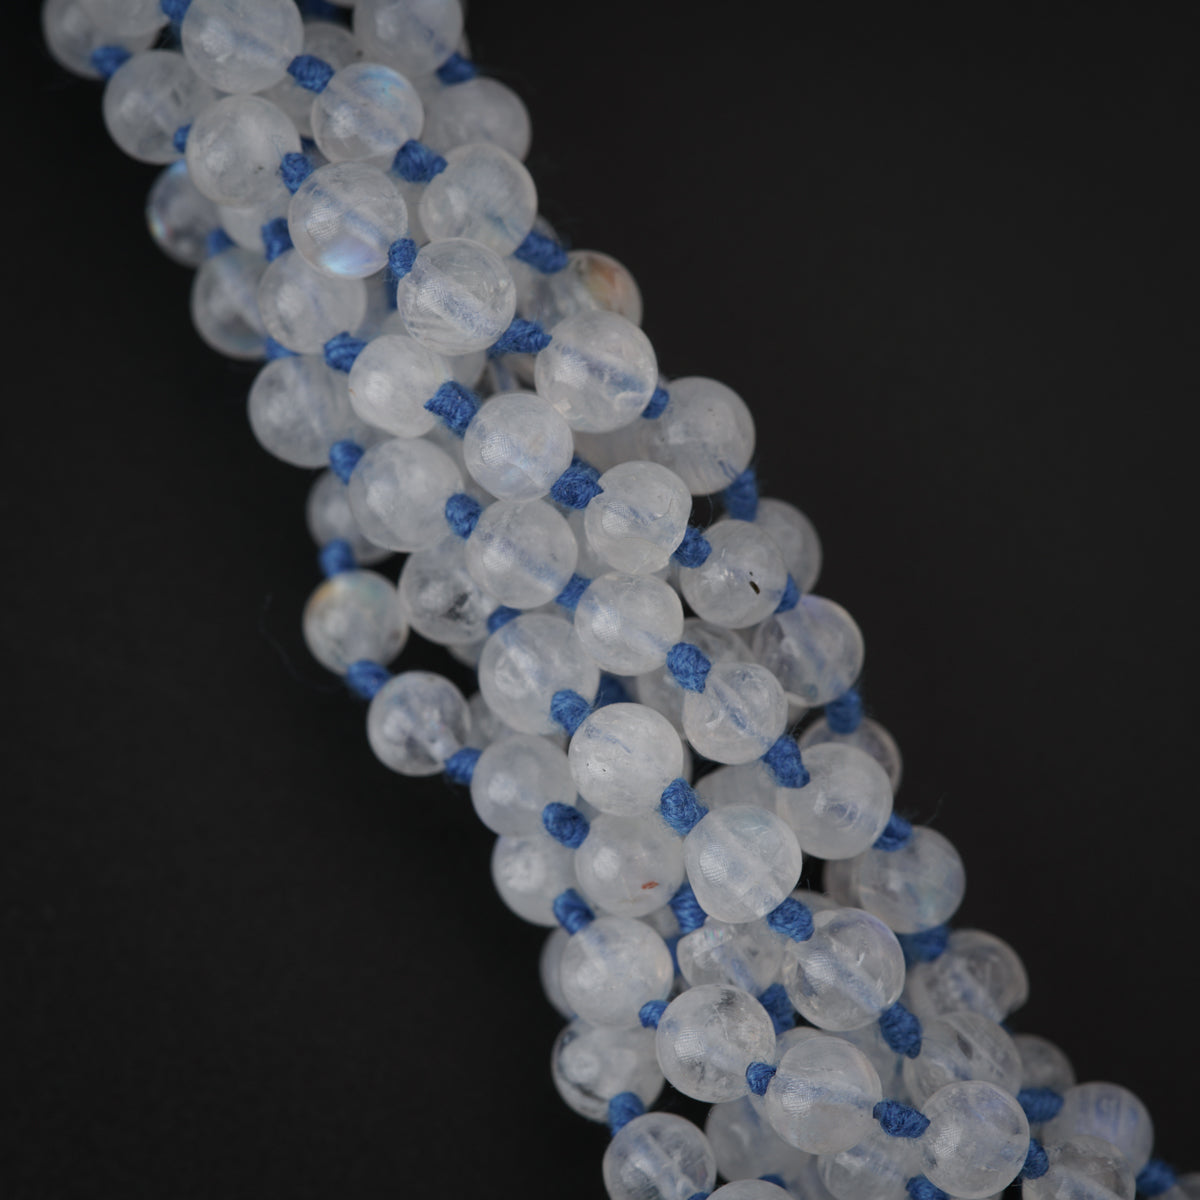 Semi Precious Stones Necklace - Crystals